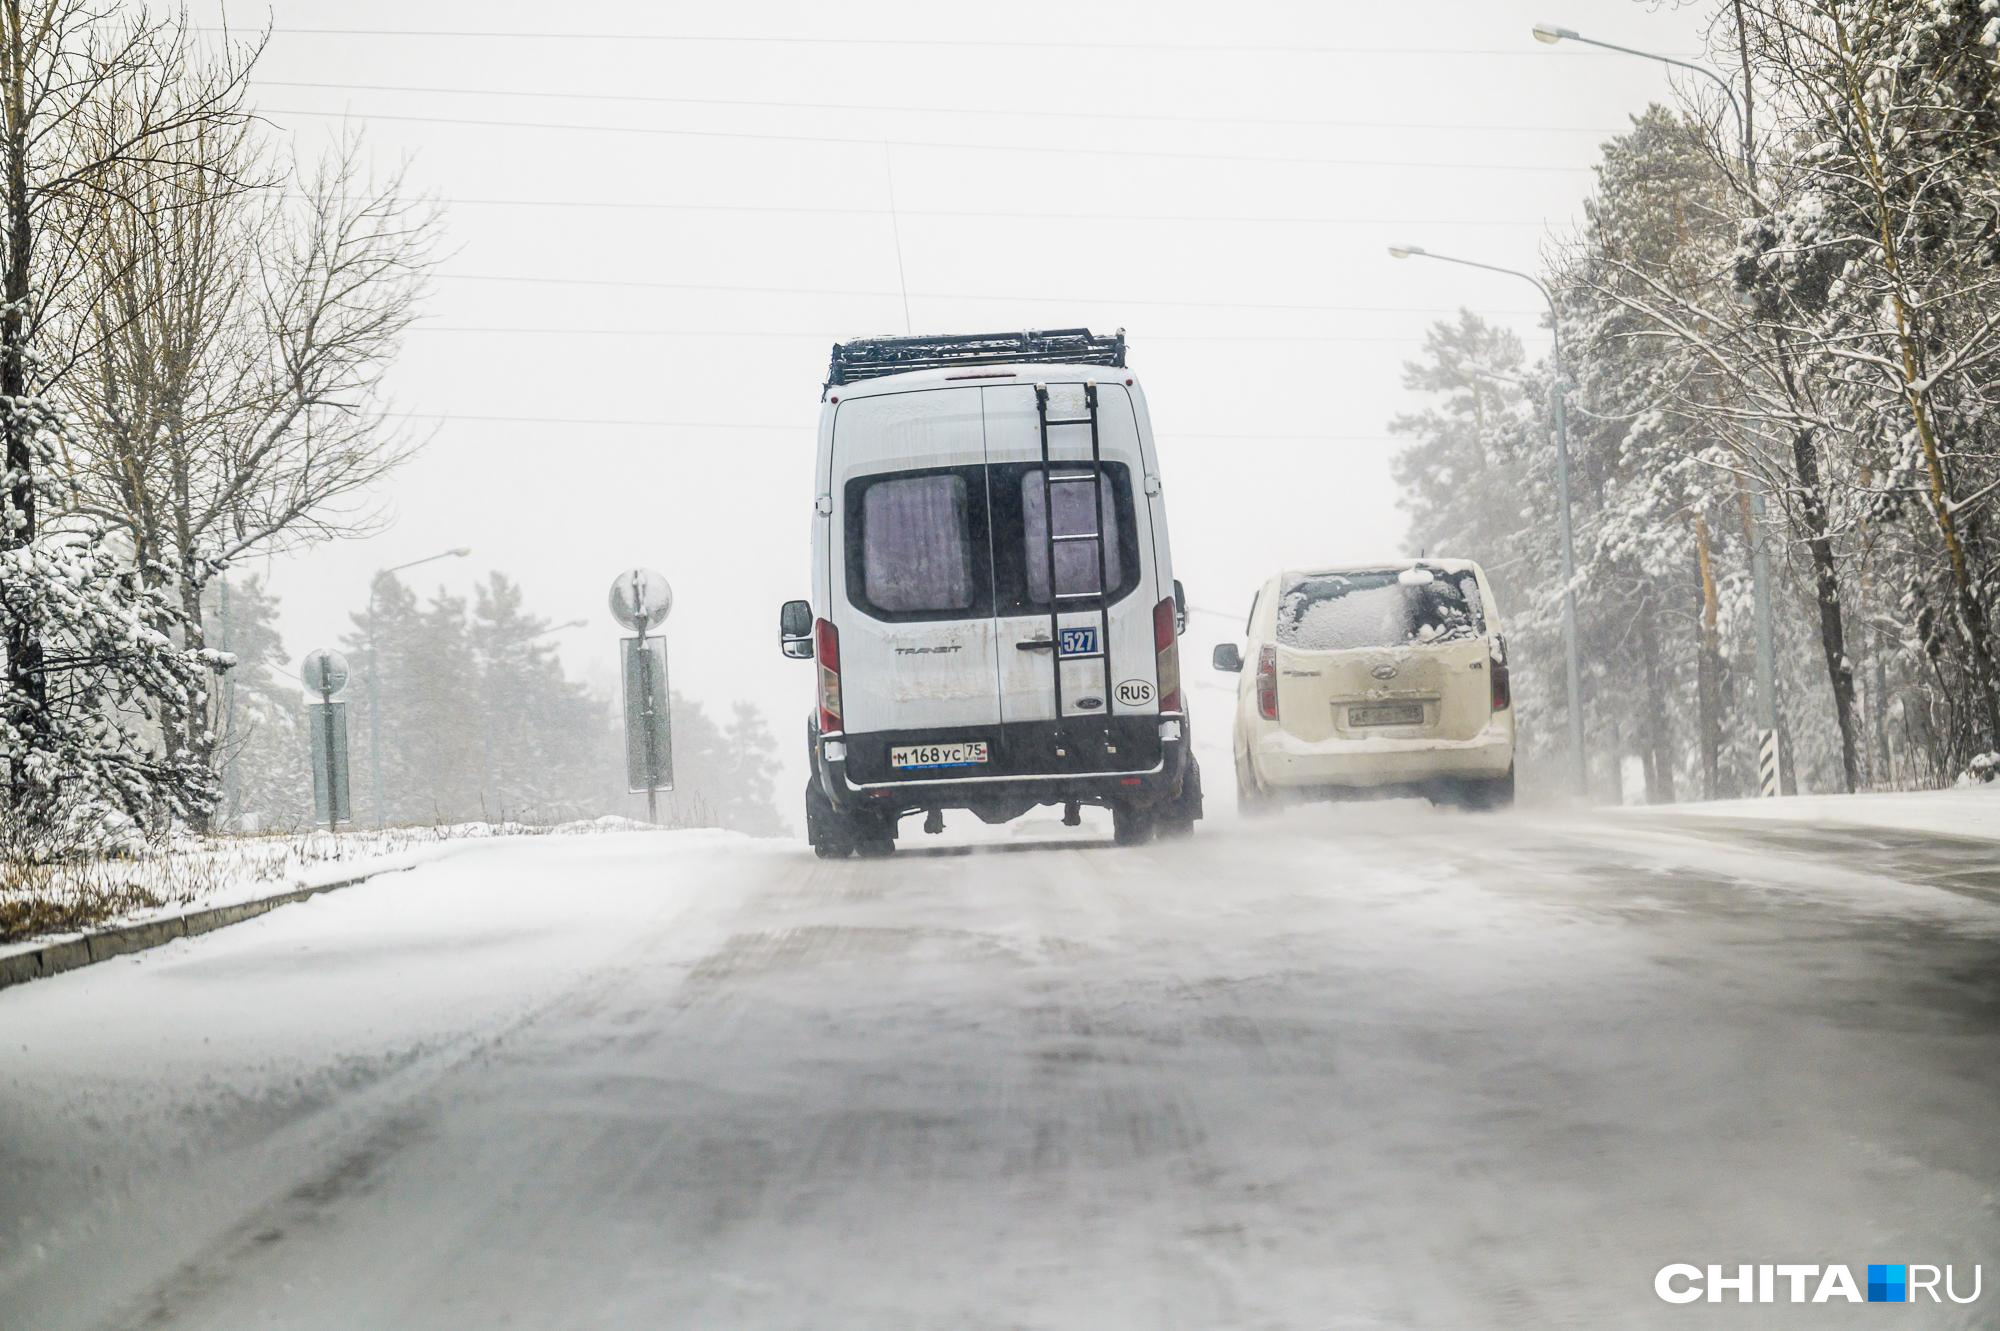 Перевозчик маршрута № 135 в Чите: пассажиры врут по поводу отсутствия автобусов